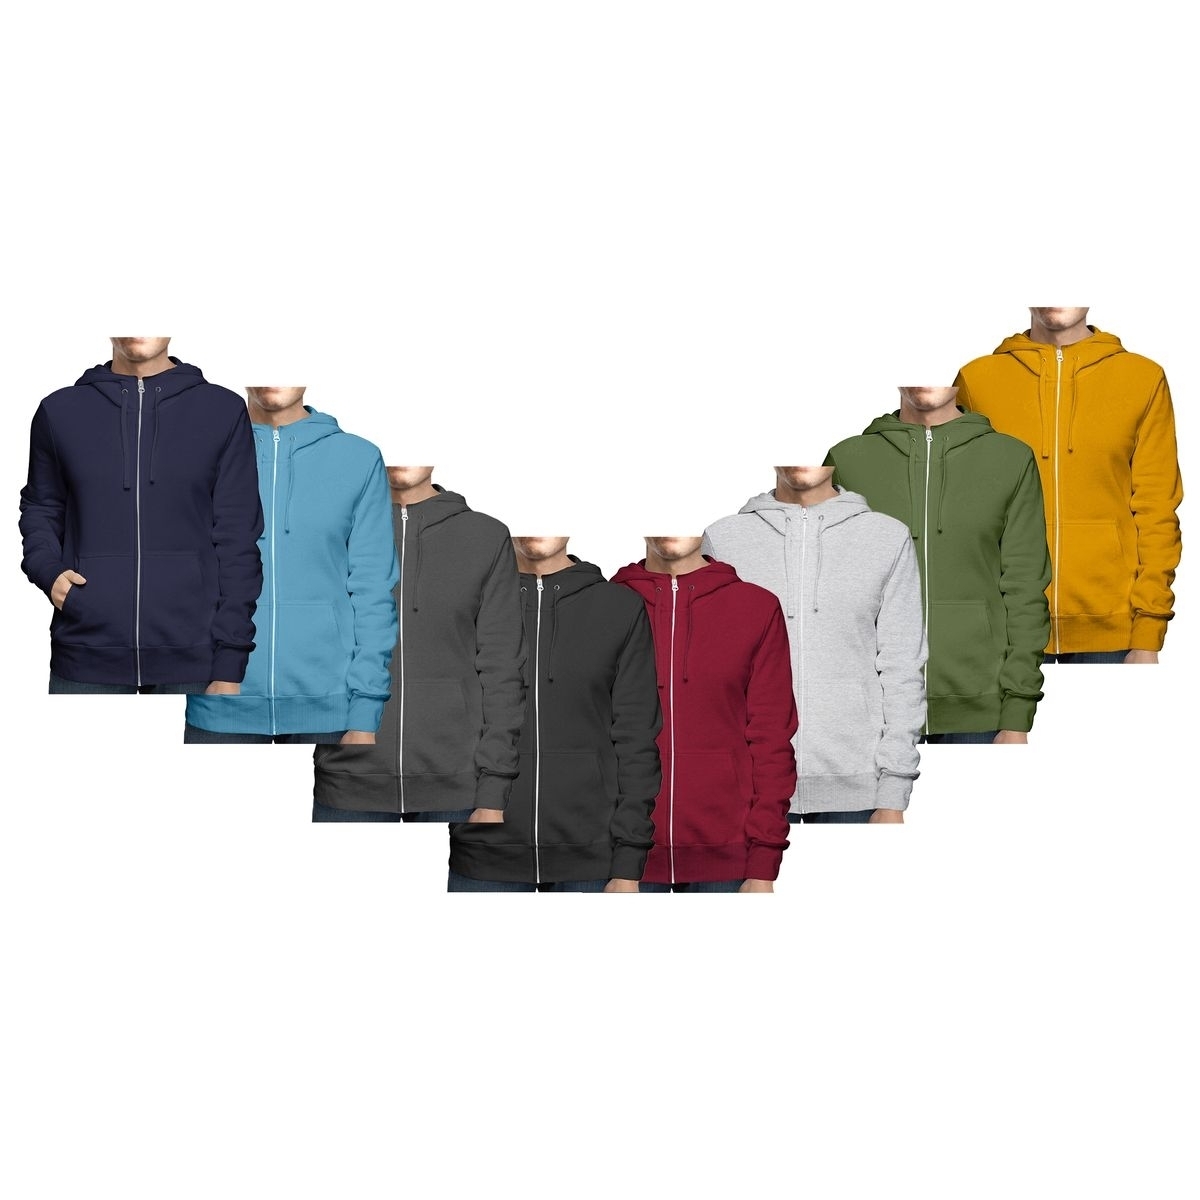 Men's Big & Tall Winter Warm Soft Cozy Full Zip-Up Fleece Lined Hoodie Sweatshirt - Charcoal, X-Large